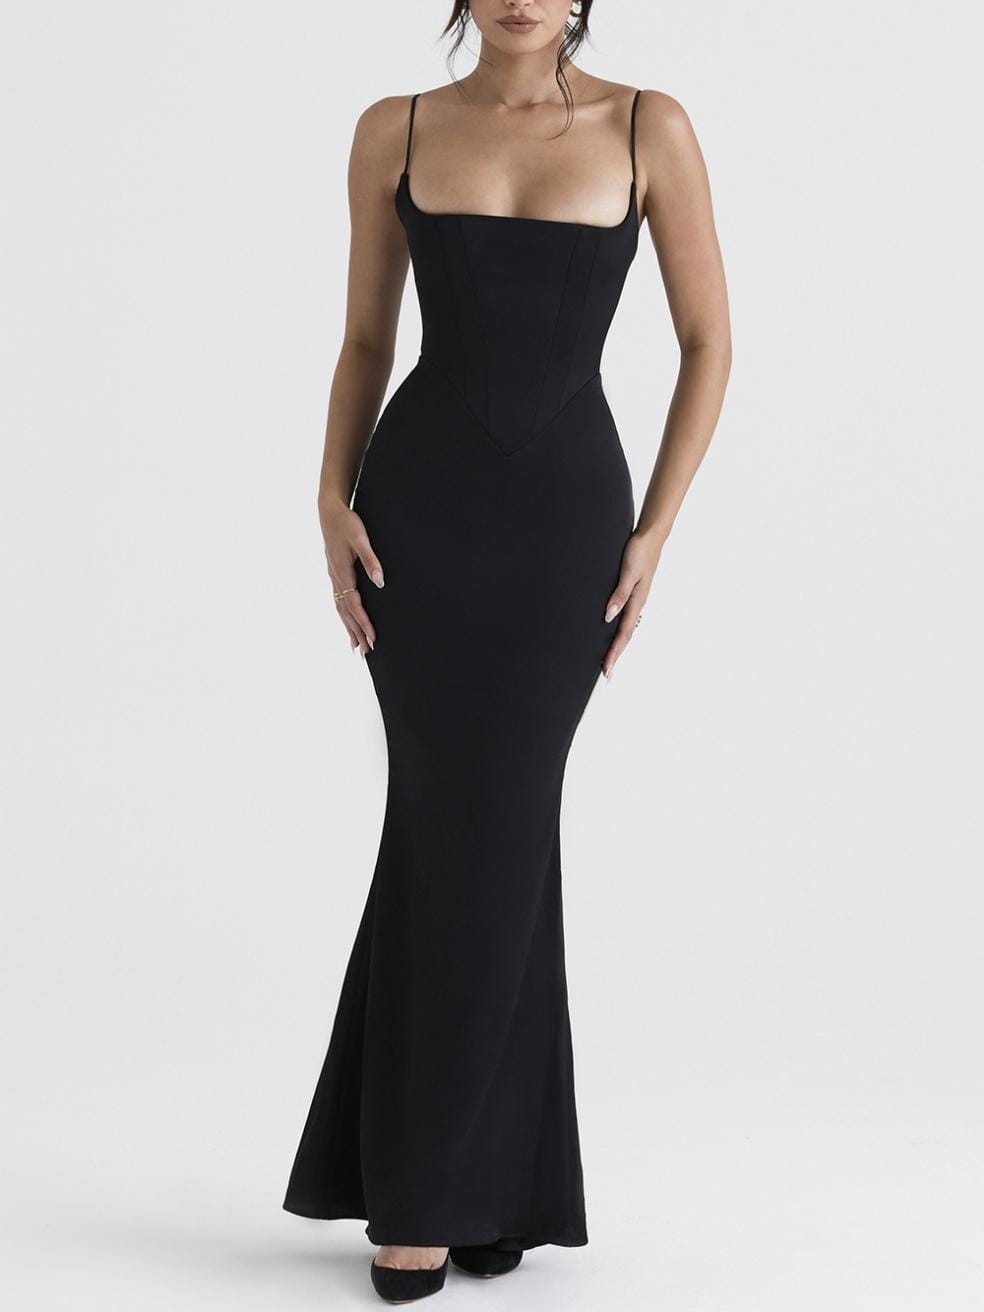 Olivette Dress in Black